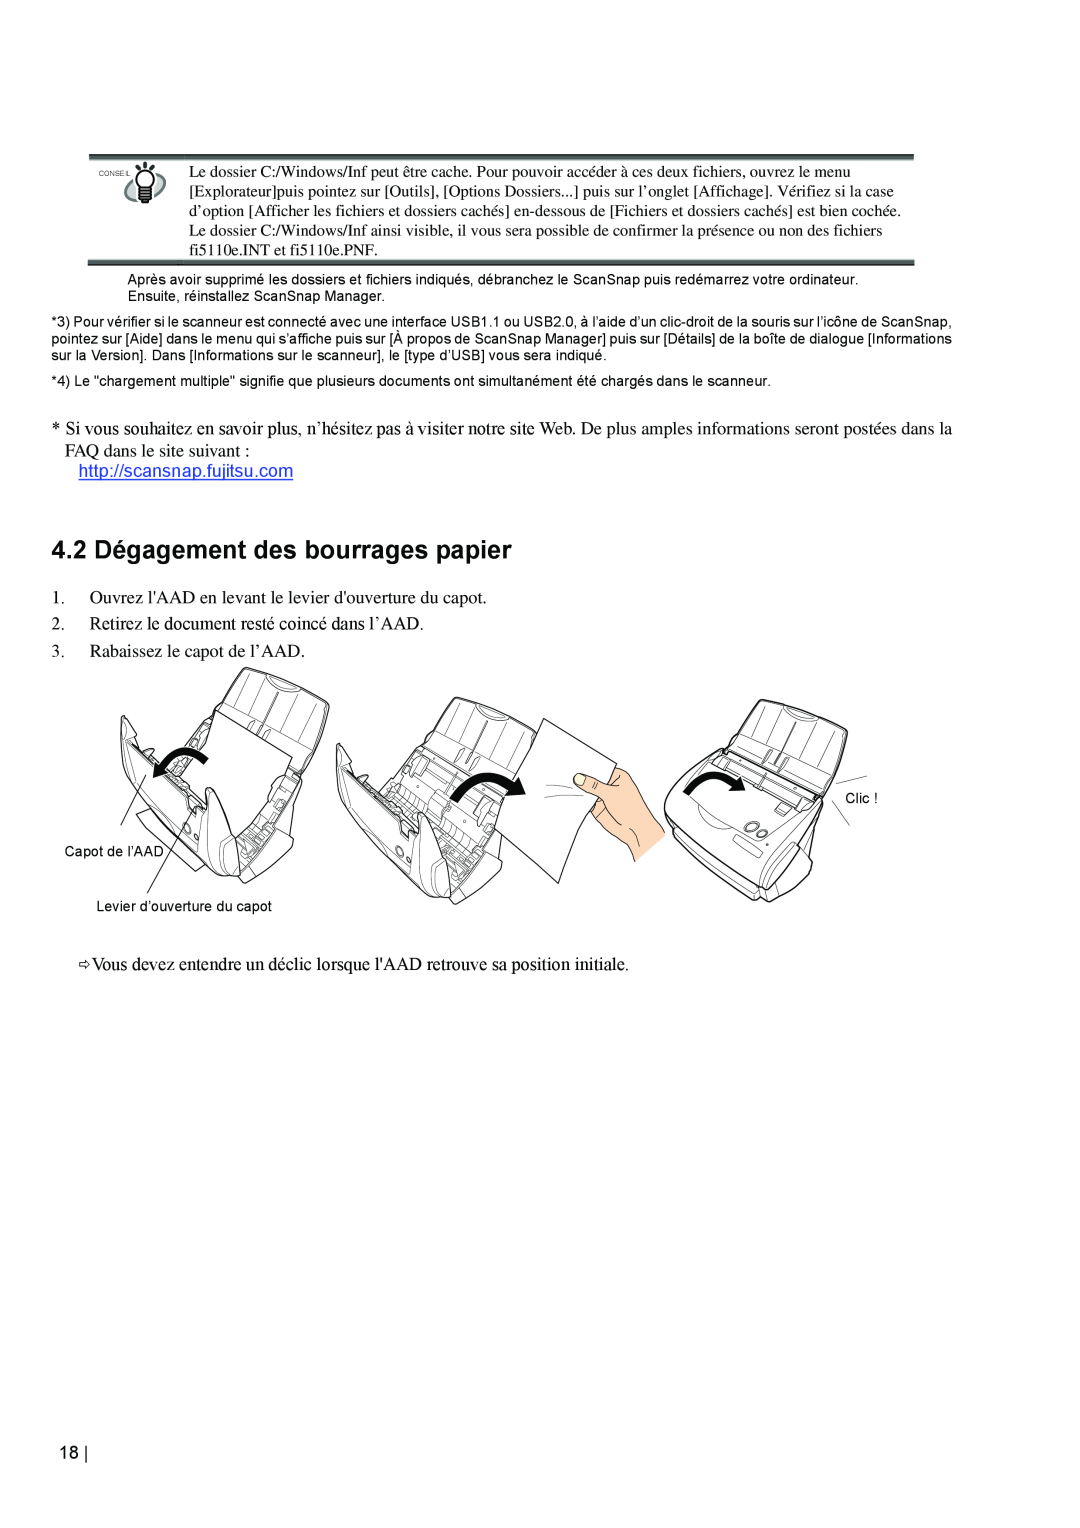 Fujitsu fi-5110EOX2 manual 4.2 Dégagement des bourrages papier, FAQ dans le site suivant http//scansnap.fujitsu.com 